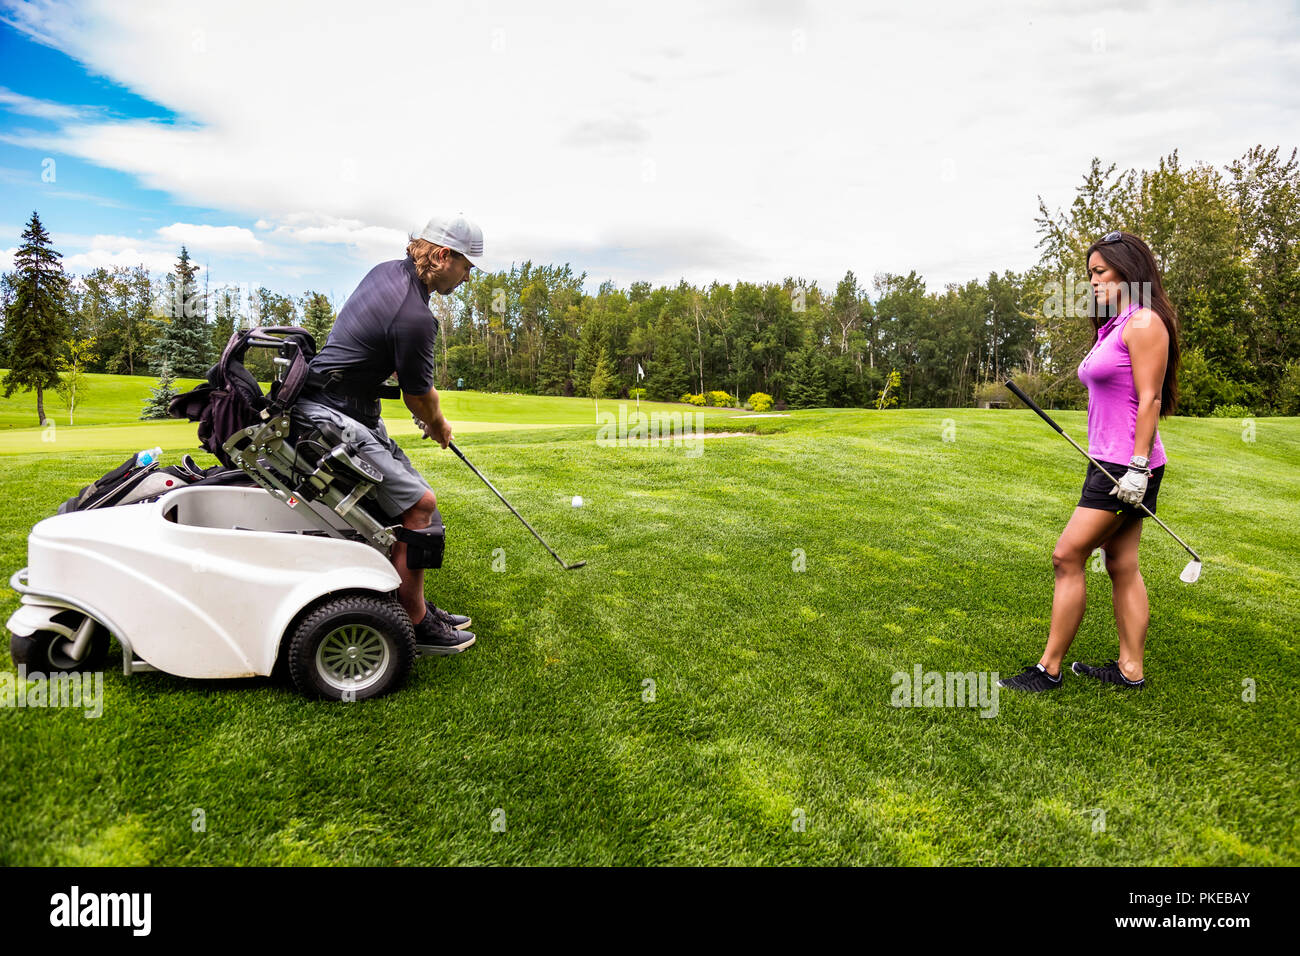 Ein körperlich behinderter Golfer, mit einem spezialisierten Rollstuhl, trifft den Golfball mit seinem Golfschläger auf dem Golf-Grün, wie eine Golfspielerin steht ... Stockfoto